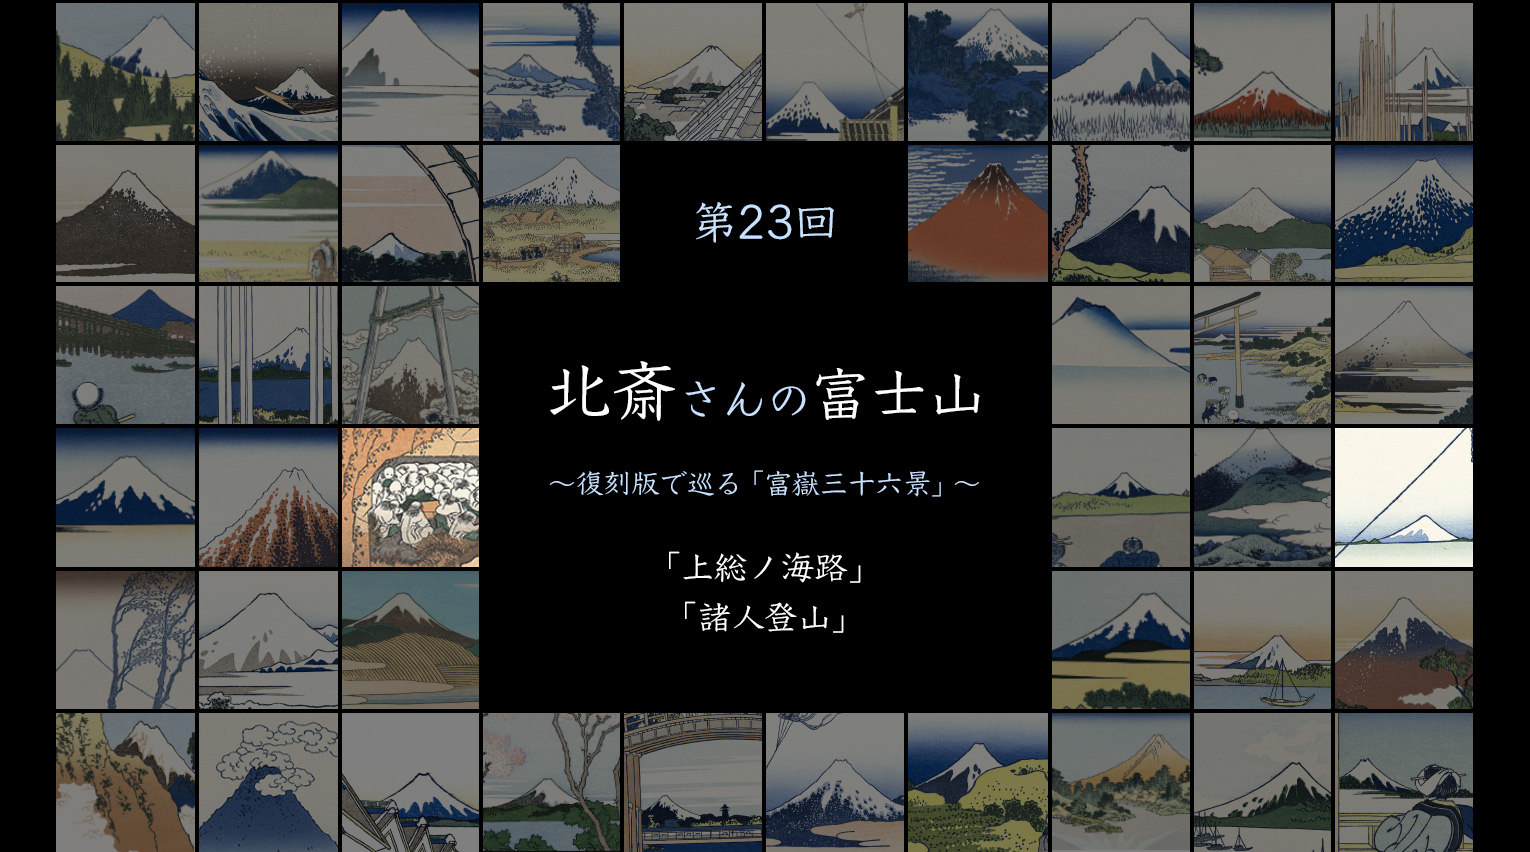 北斎さんの富士山 〜復刻版で見る「富嶽三十六景」〜 (23)【PR】